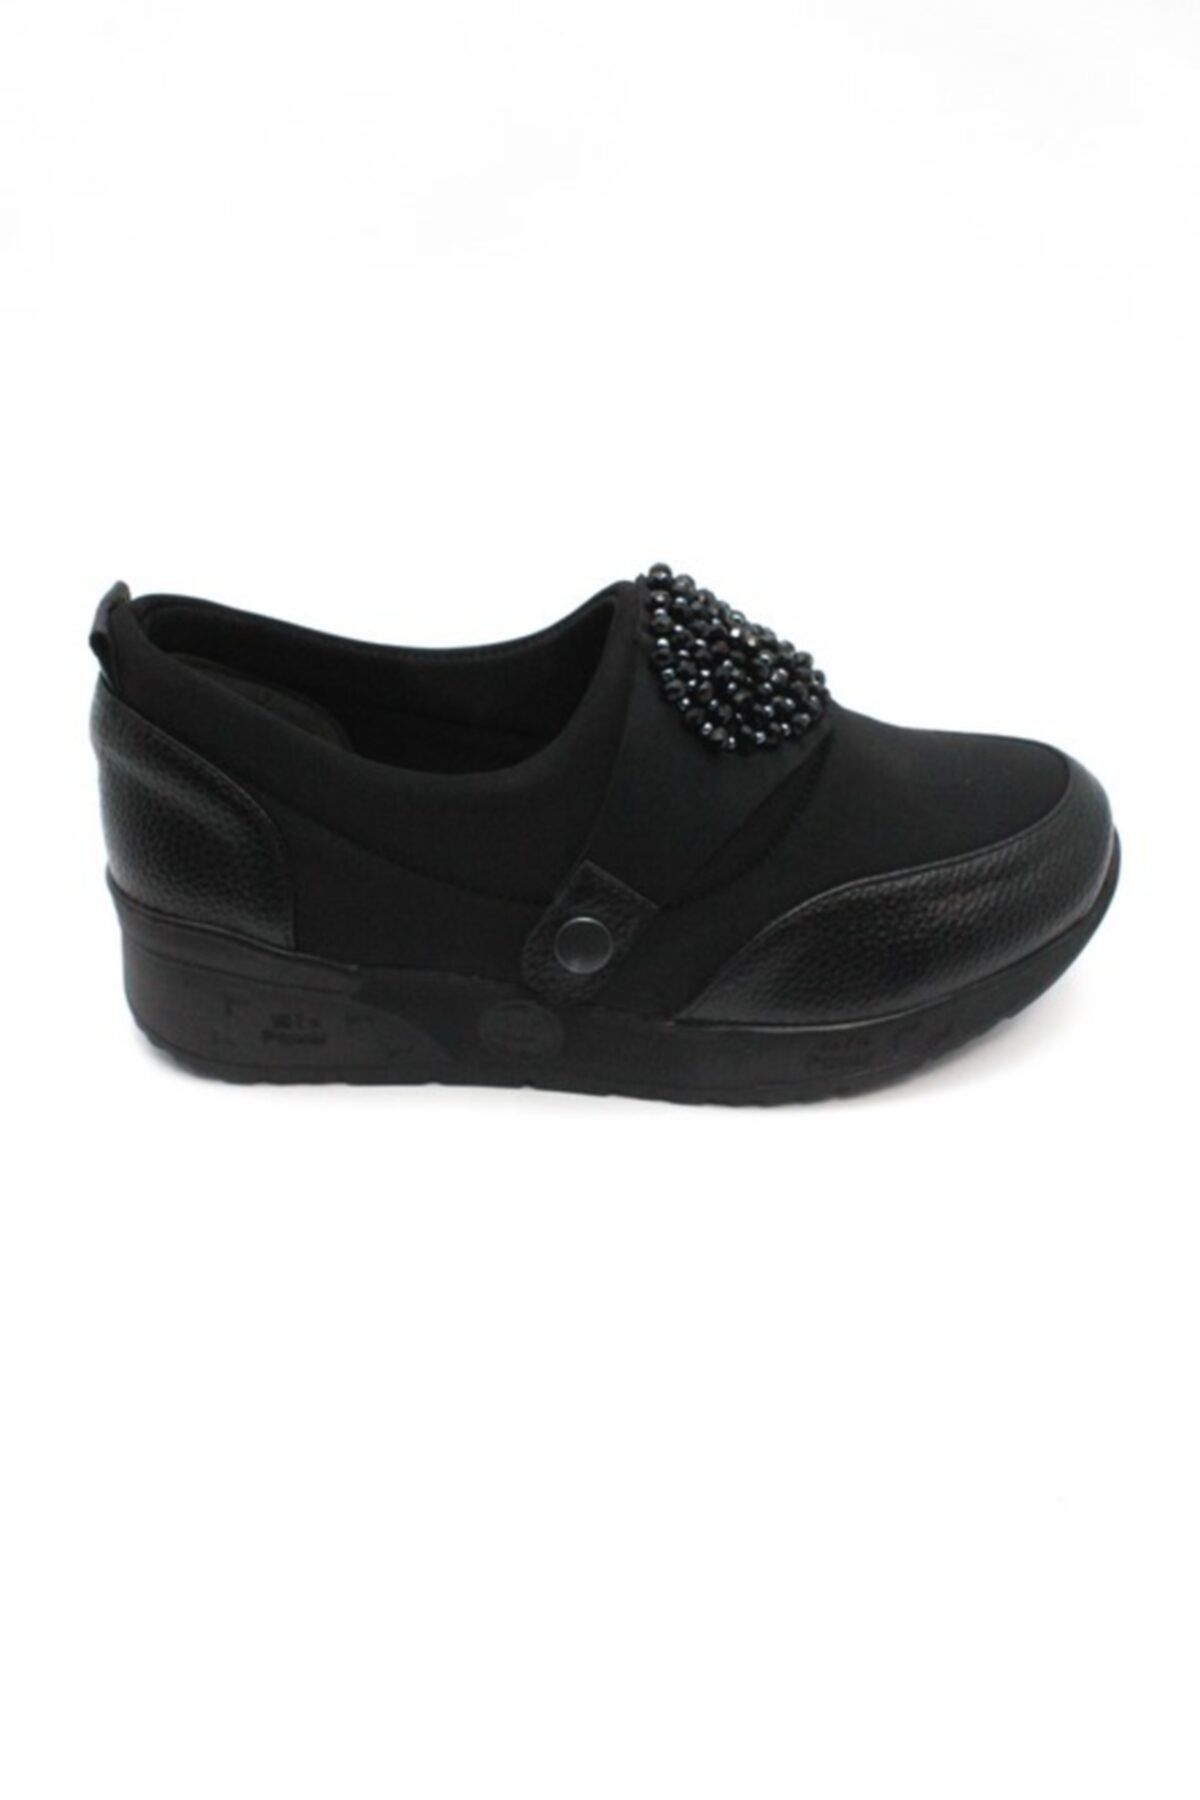 MT Kadın Siyah Spor Taşlı Ayakkabı e M&t 9601